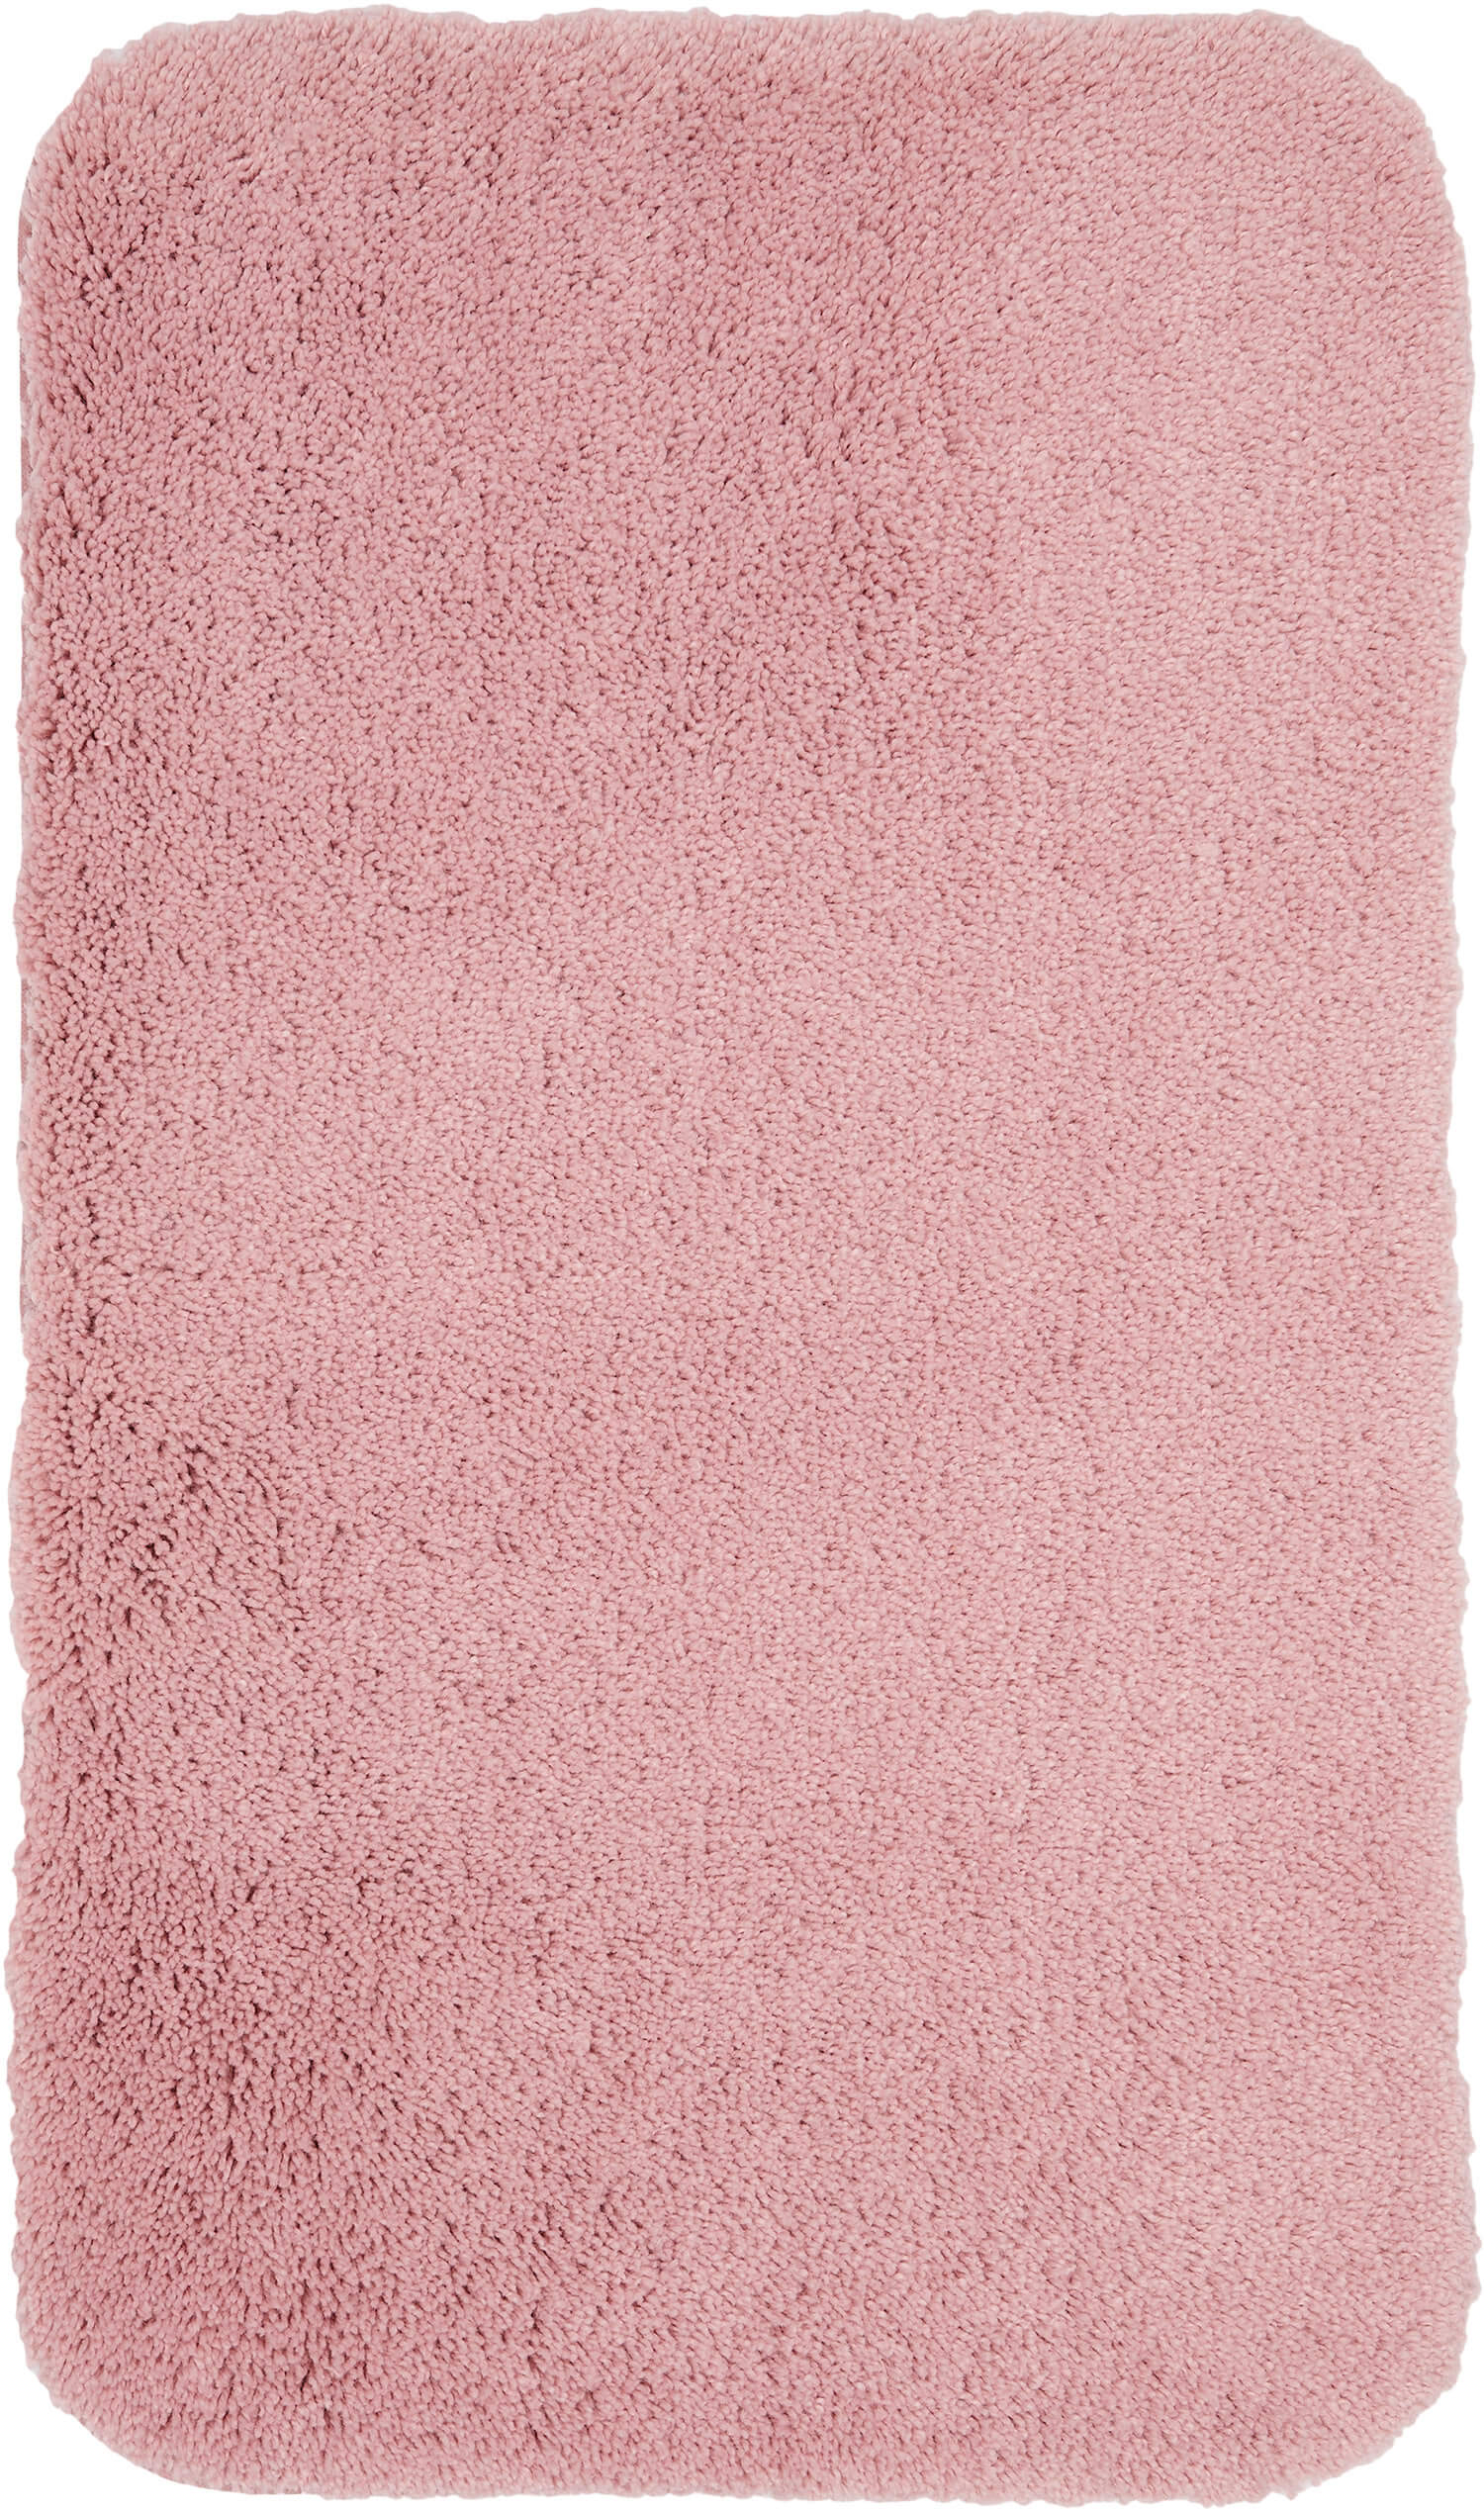 Adelaide Rose Pink Bath Mat